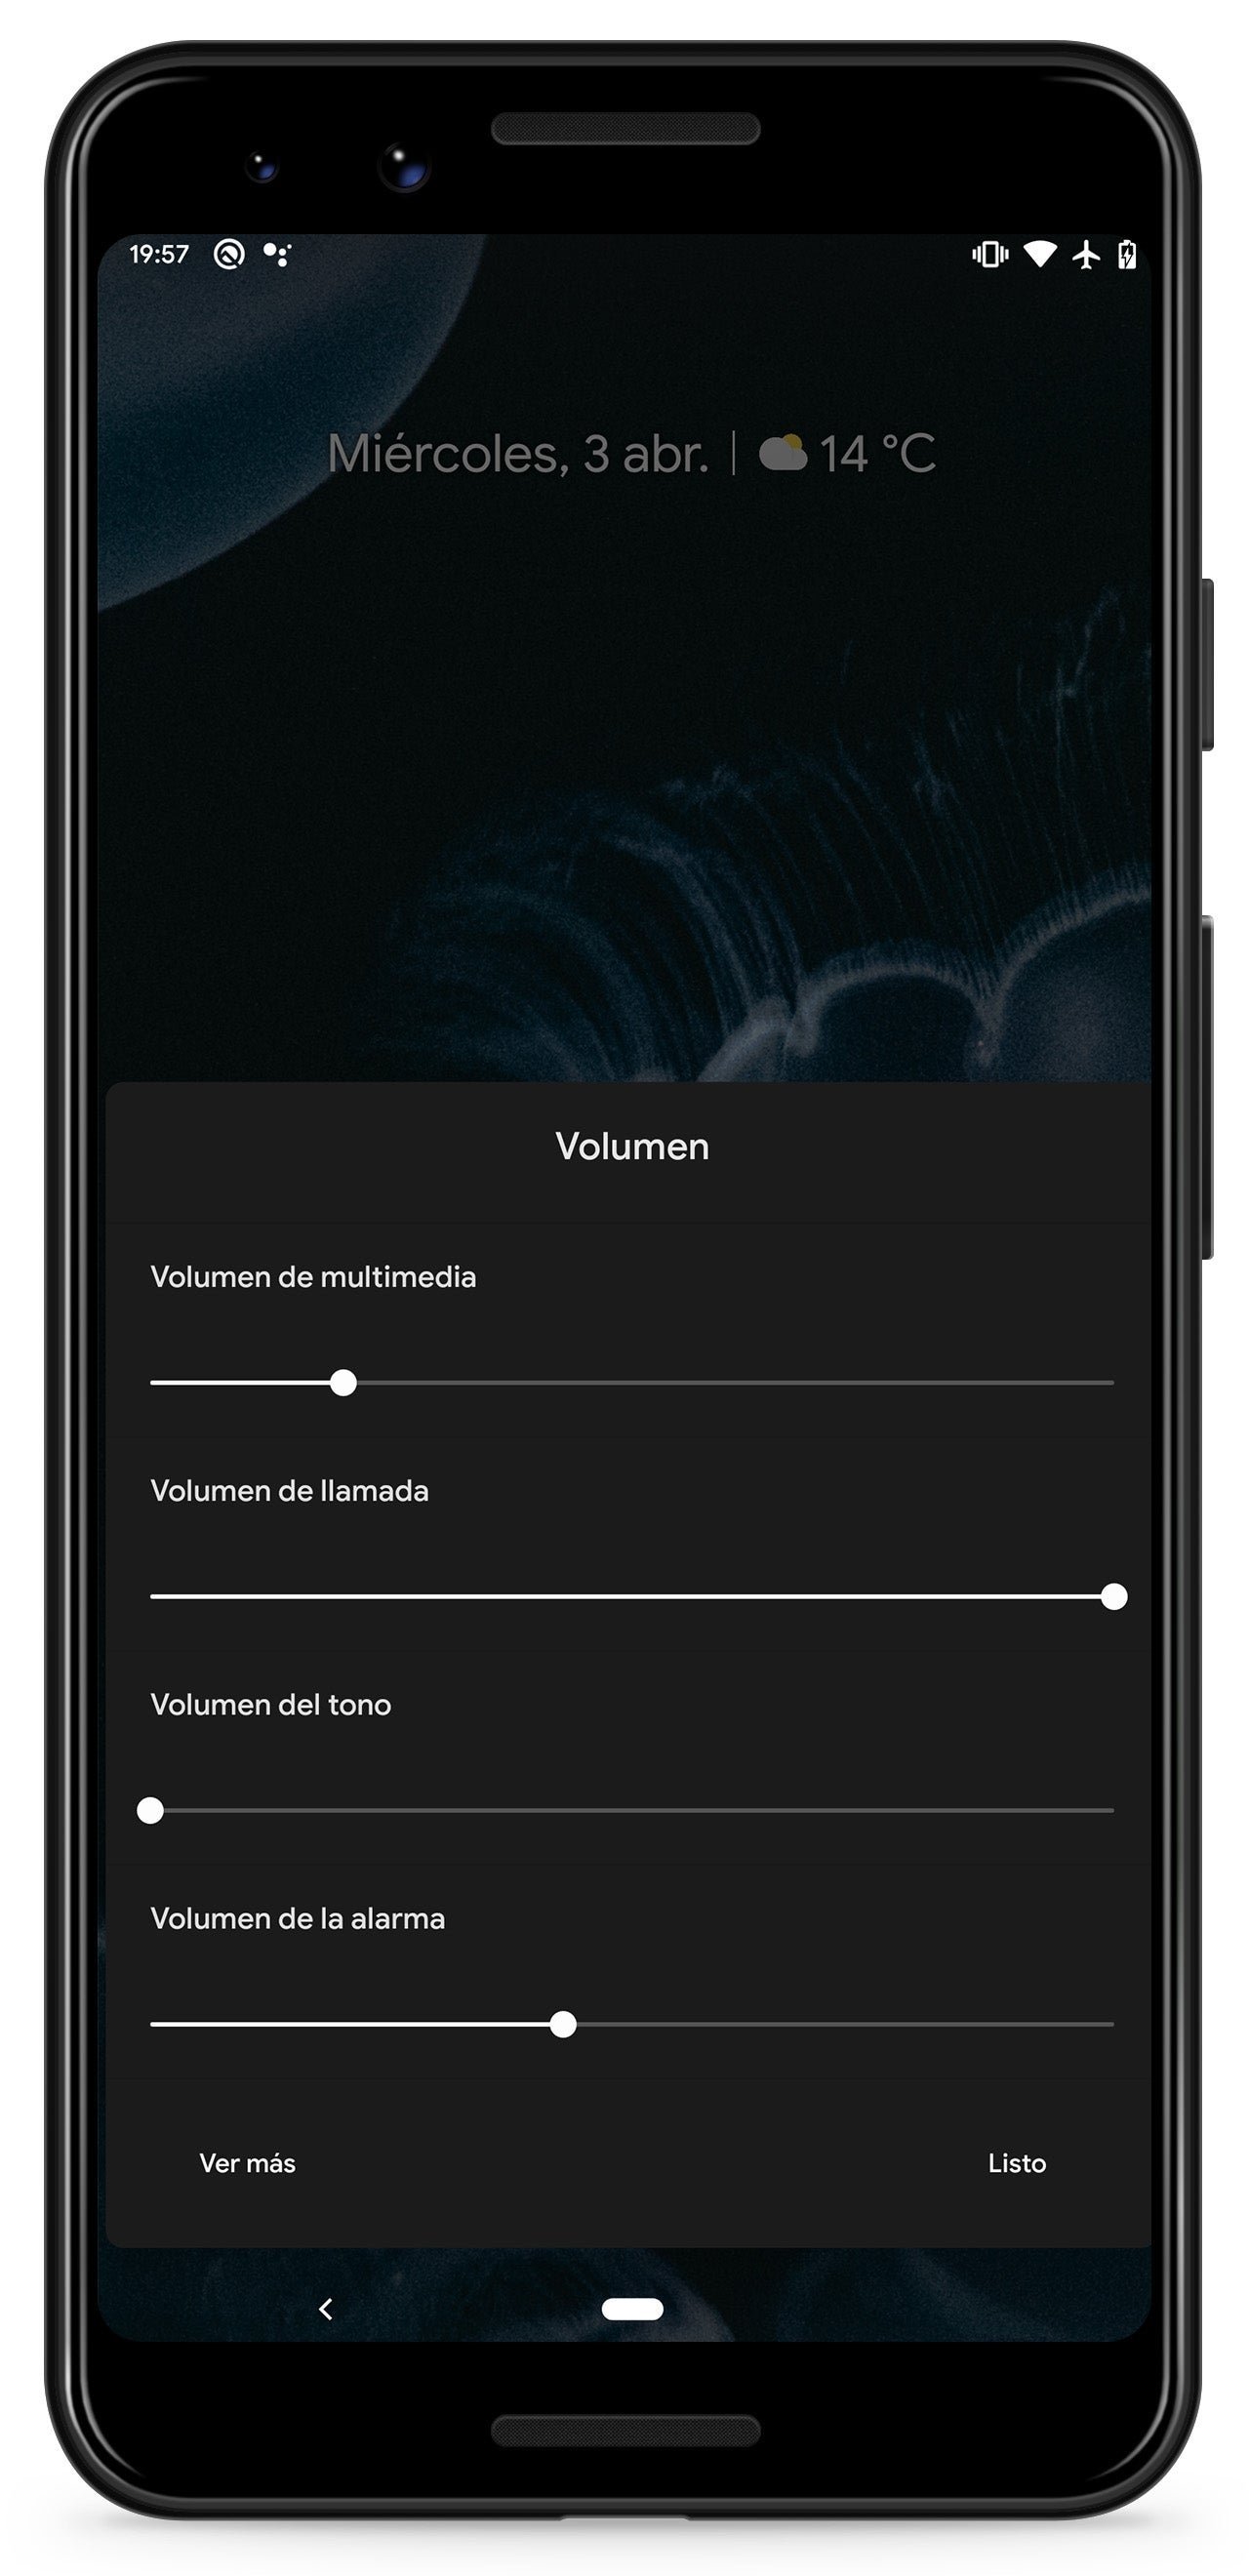 Android Q Beta 2 ya disponible: notificaciones en burbujas, emulador de móviles plegables y mucho más